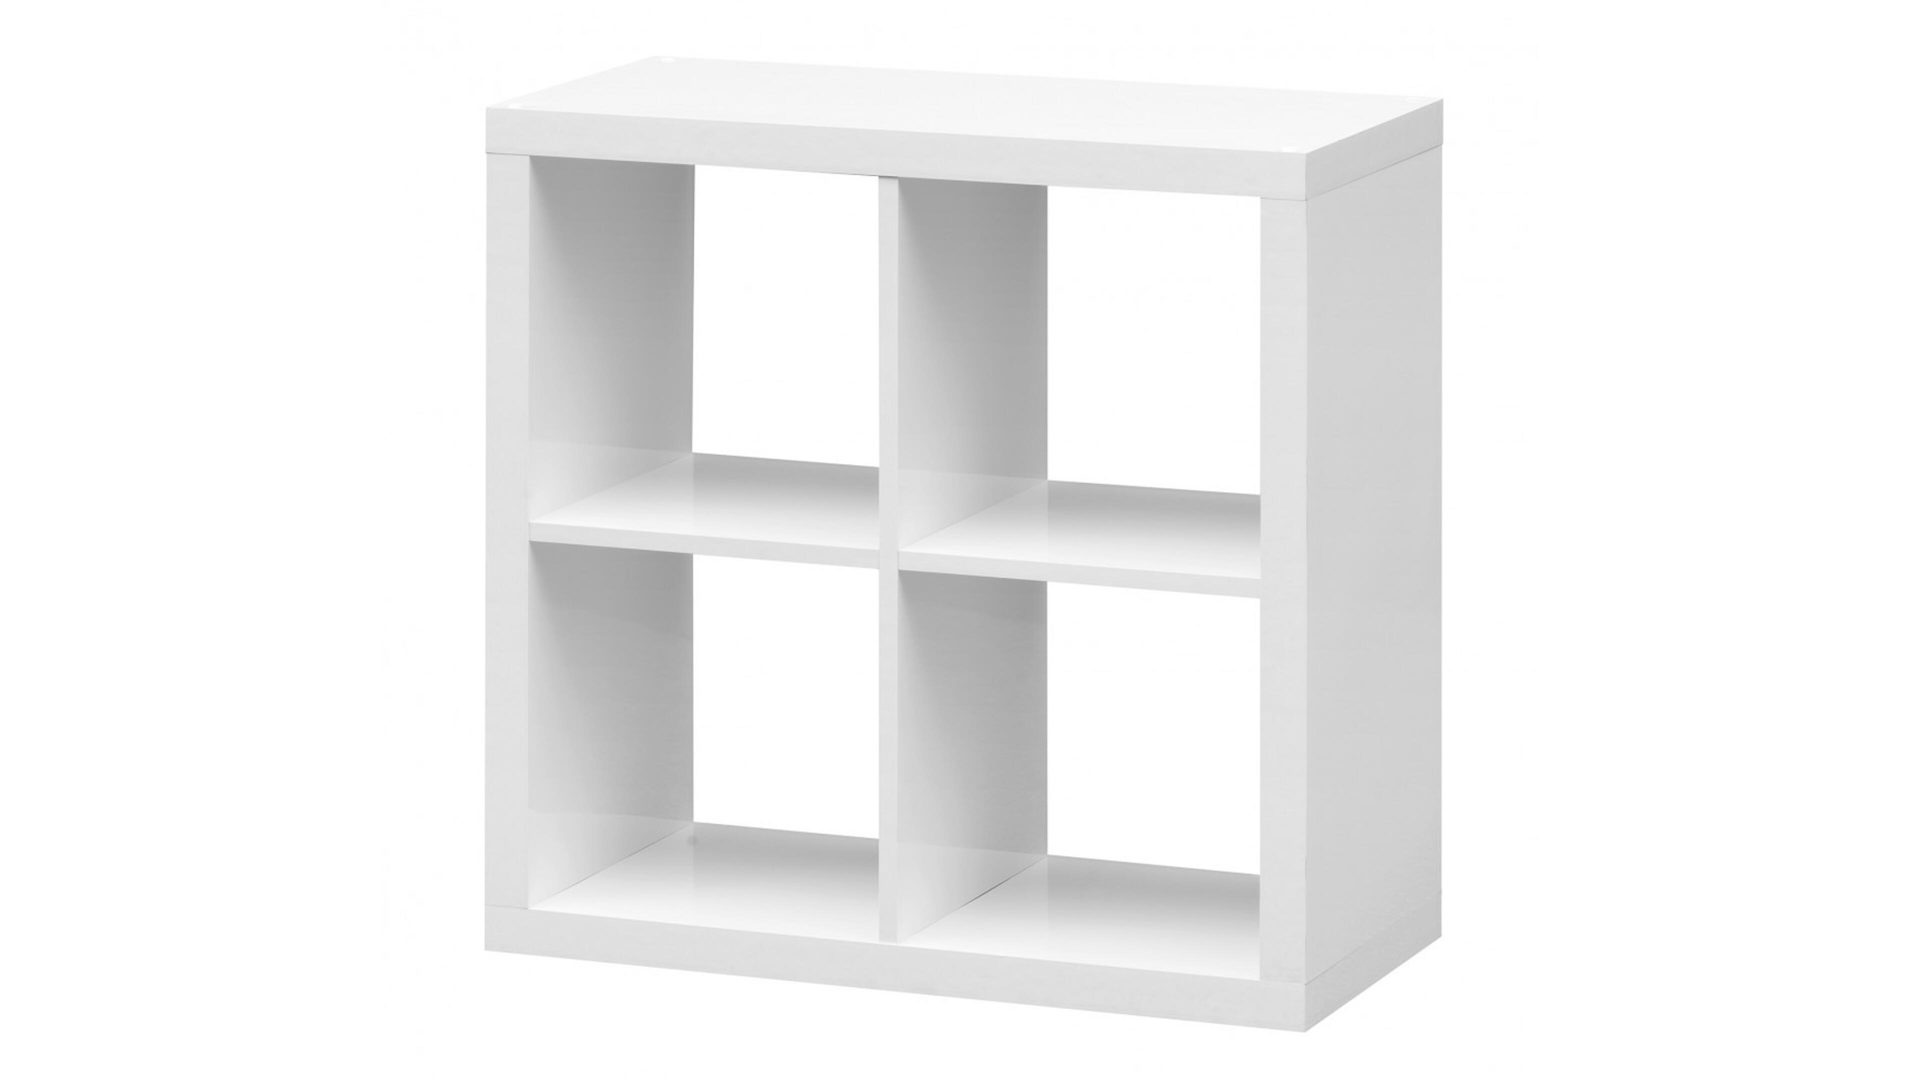 Raumteiler Bega consult in Weiß Raumteiler bzw. Bücherregal oder Wandregal mattweiße Kunststoffoberflächen - vier  Fächer, ca. 77 x 77 x 38 cm